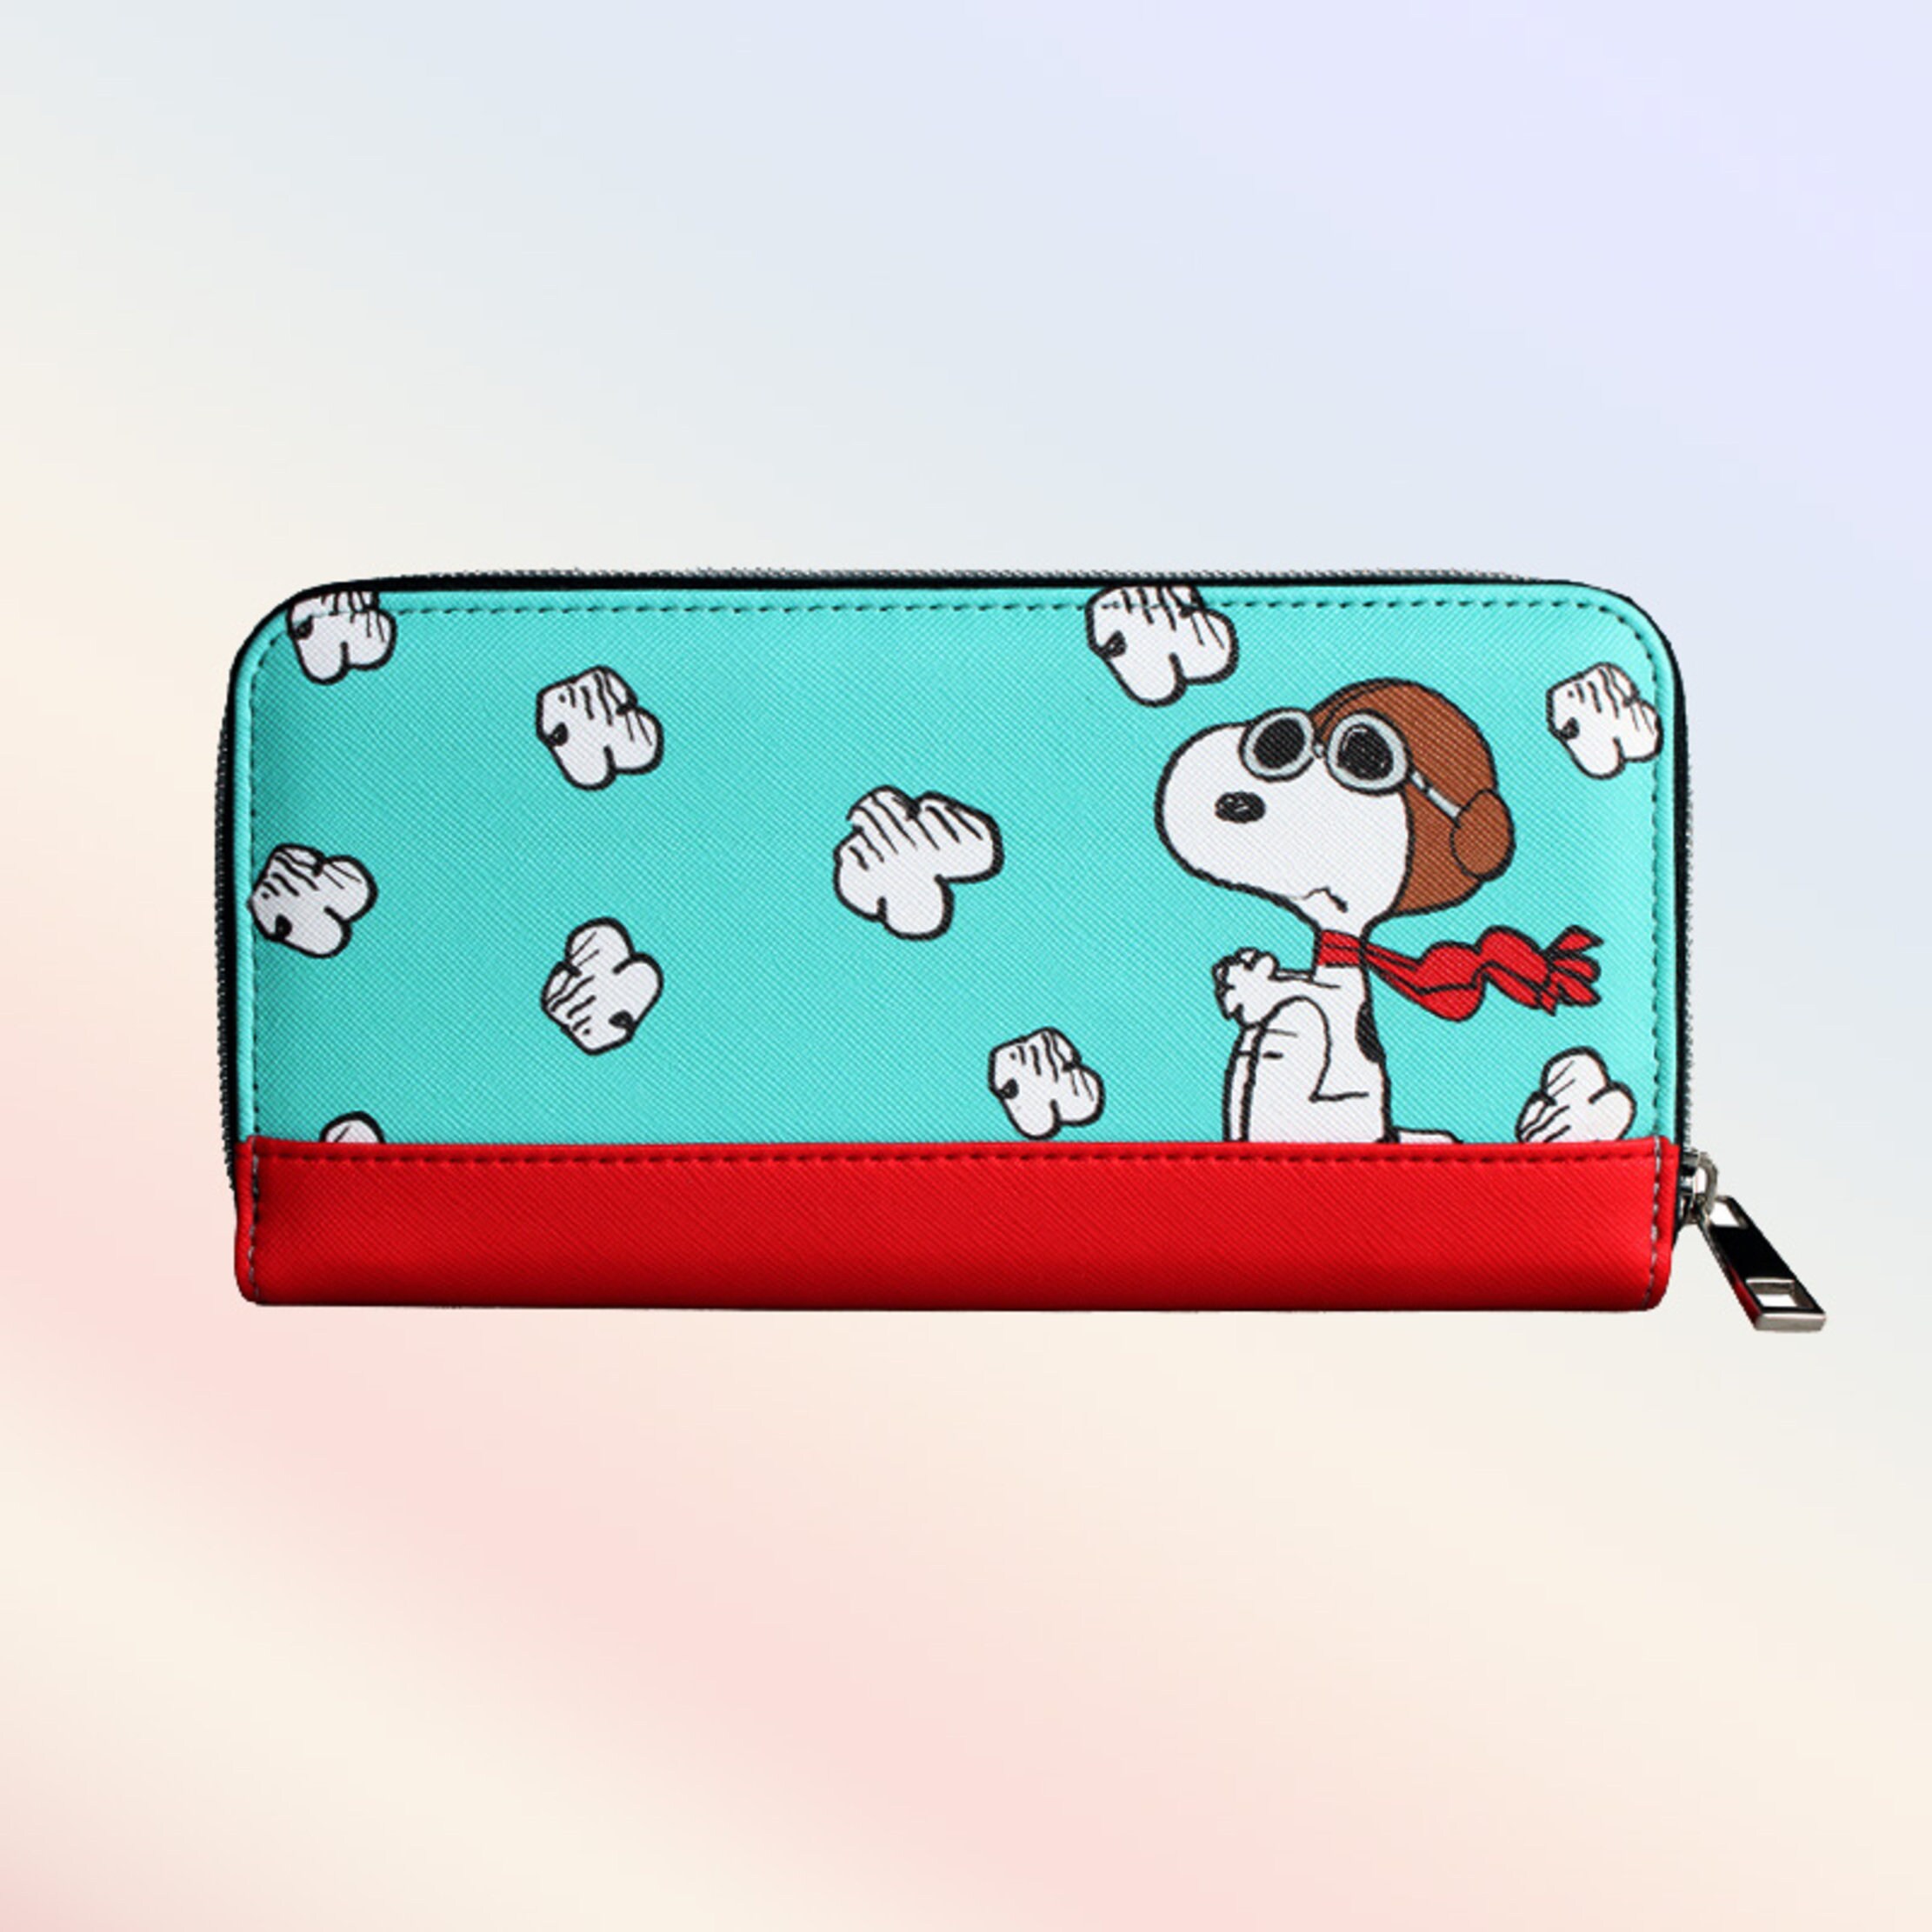 Snoopy Wallet - Etsy Canada